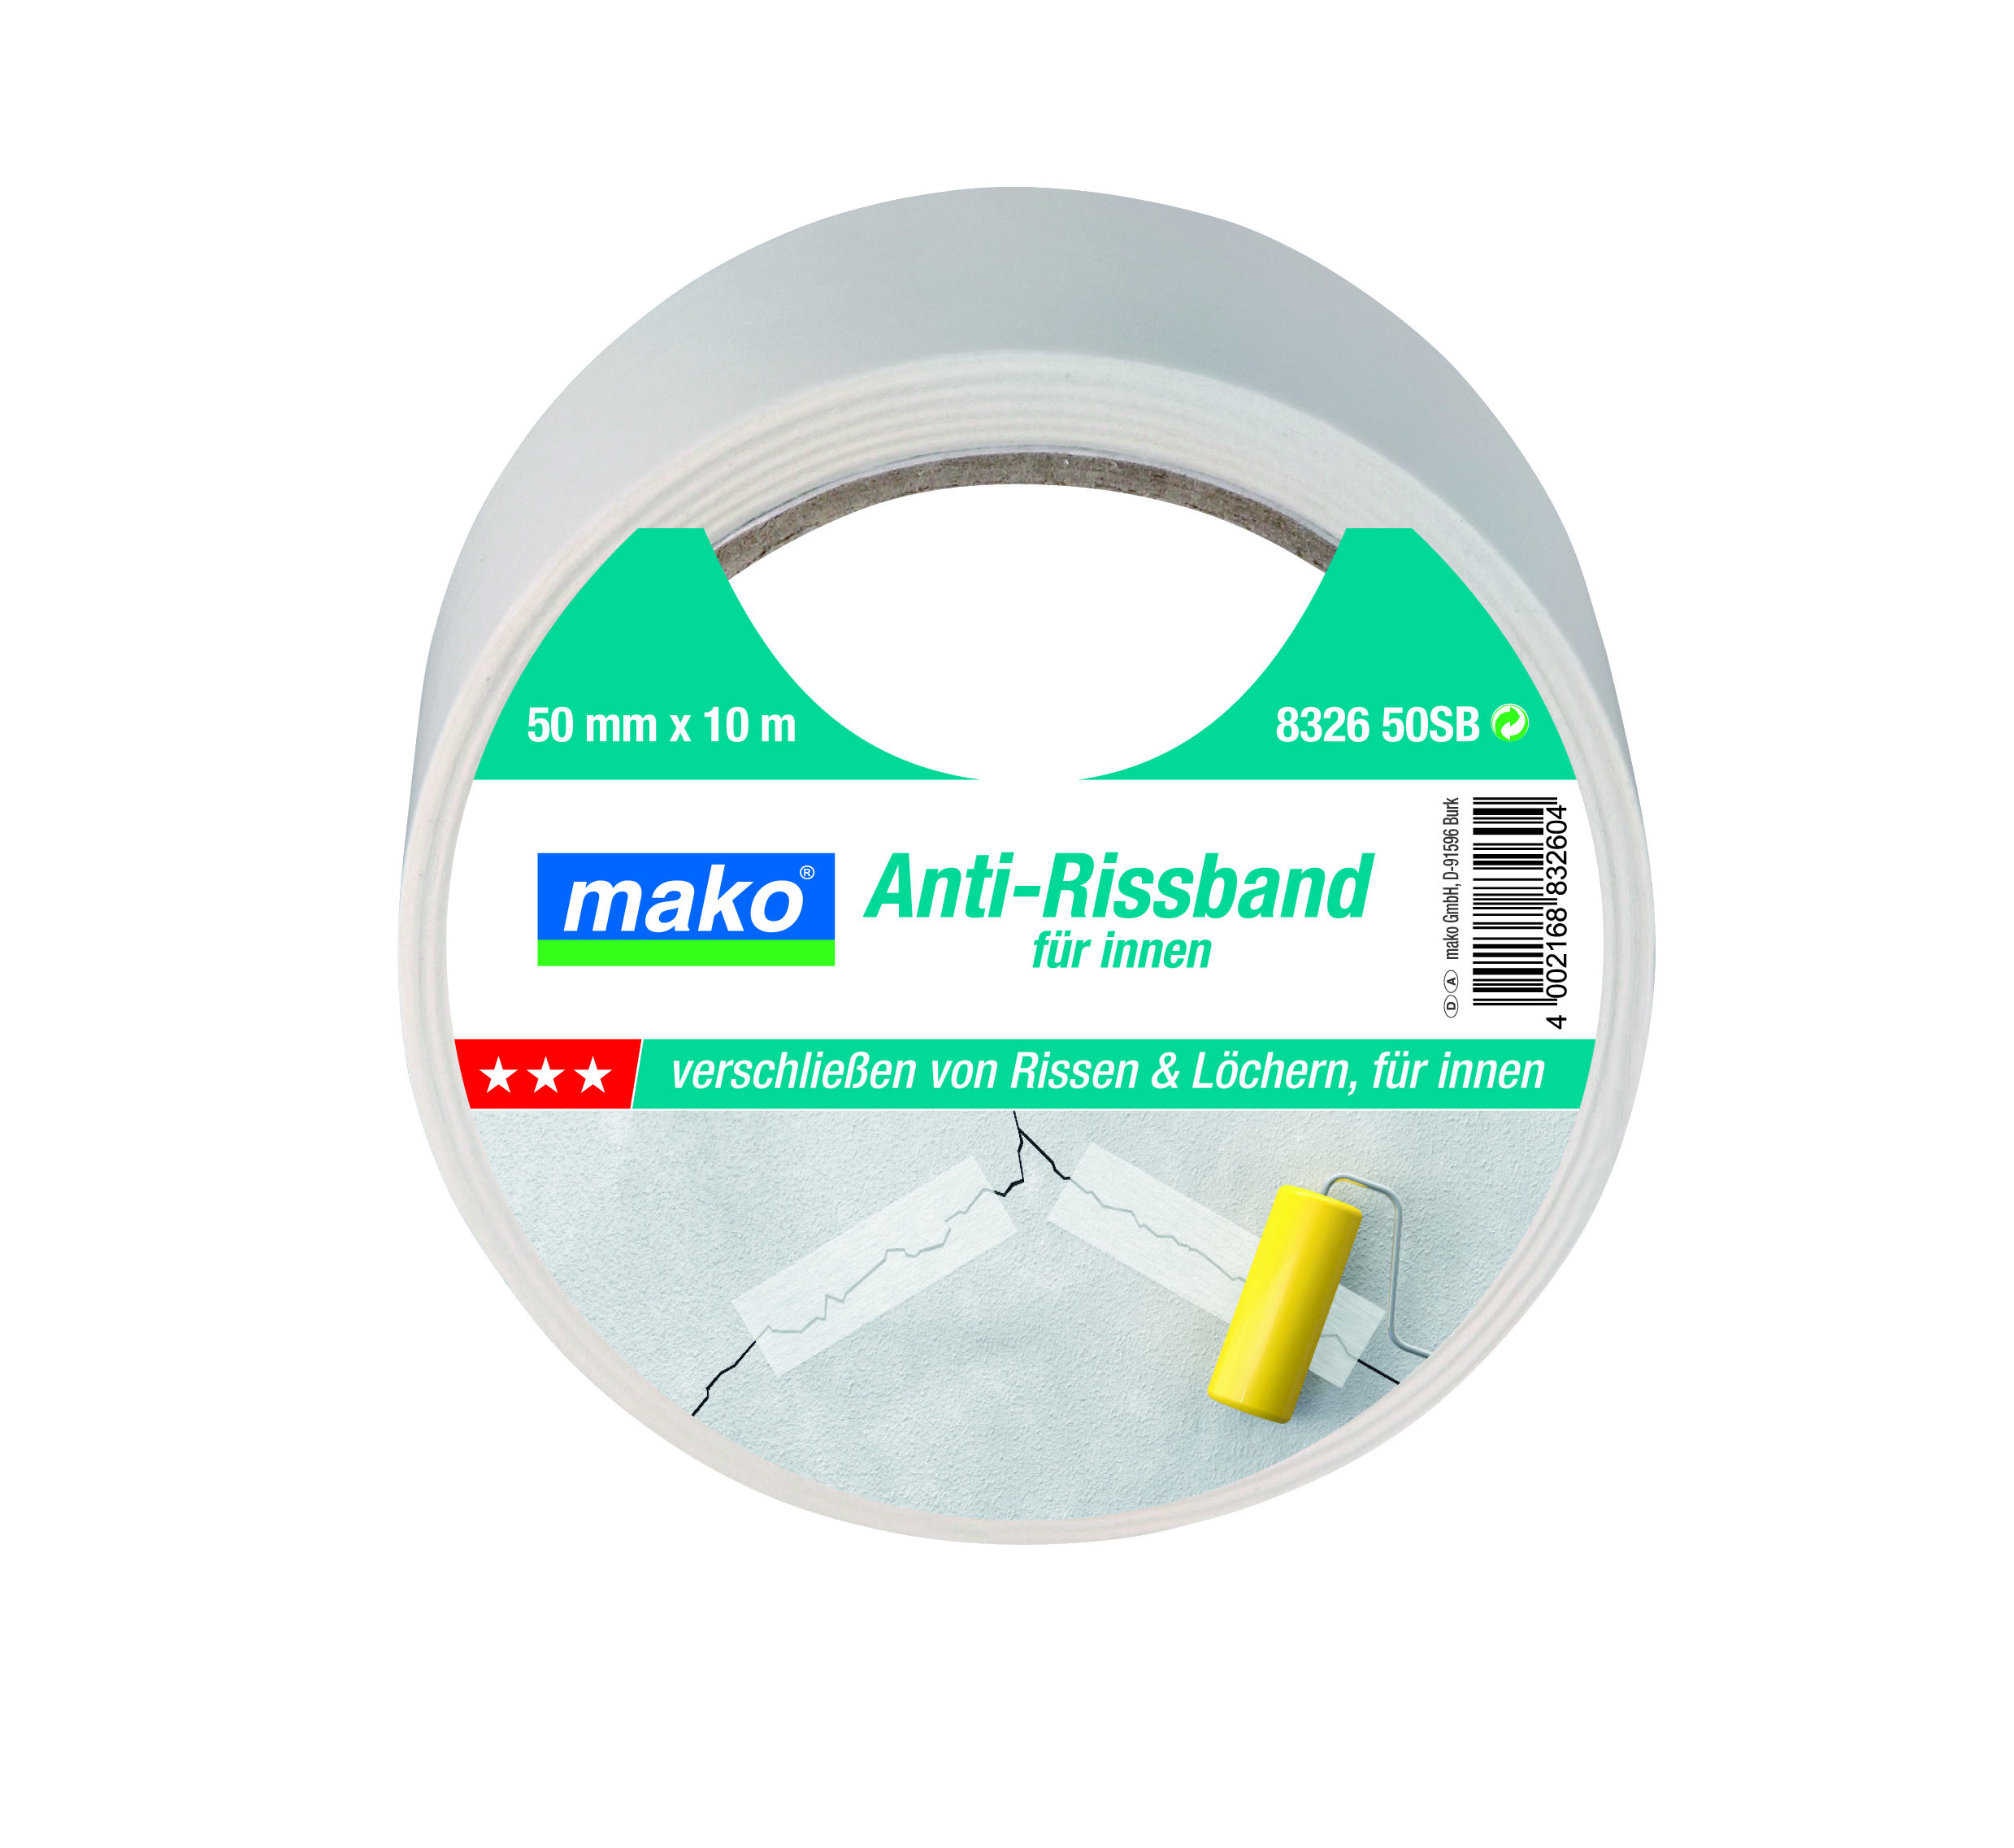 Mako Anti-Rissband 50 mm x 10 m